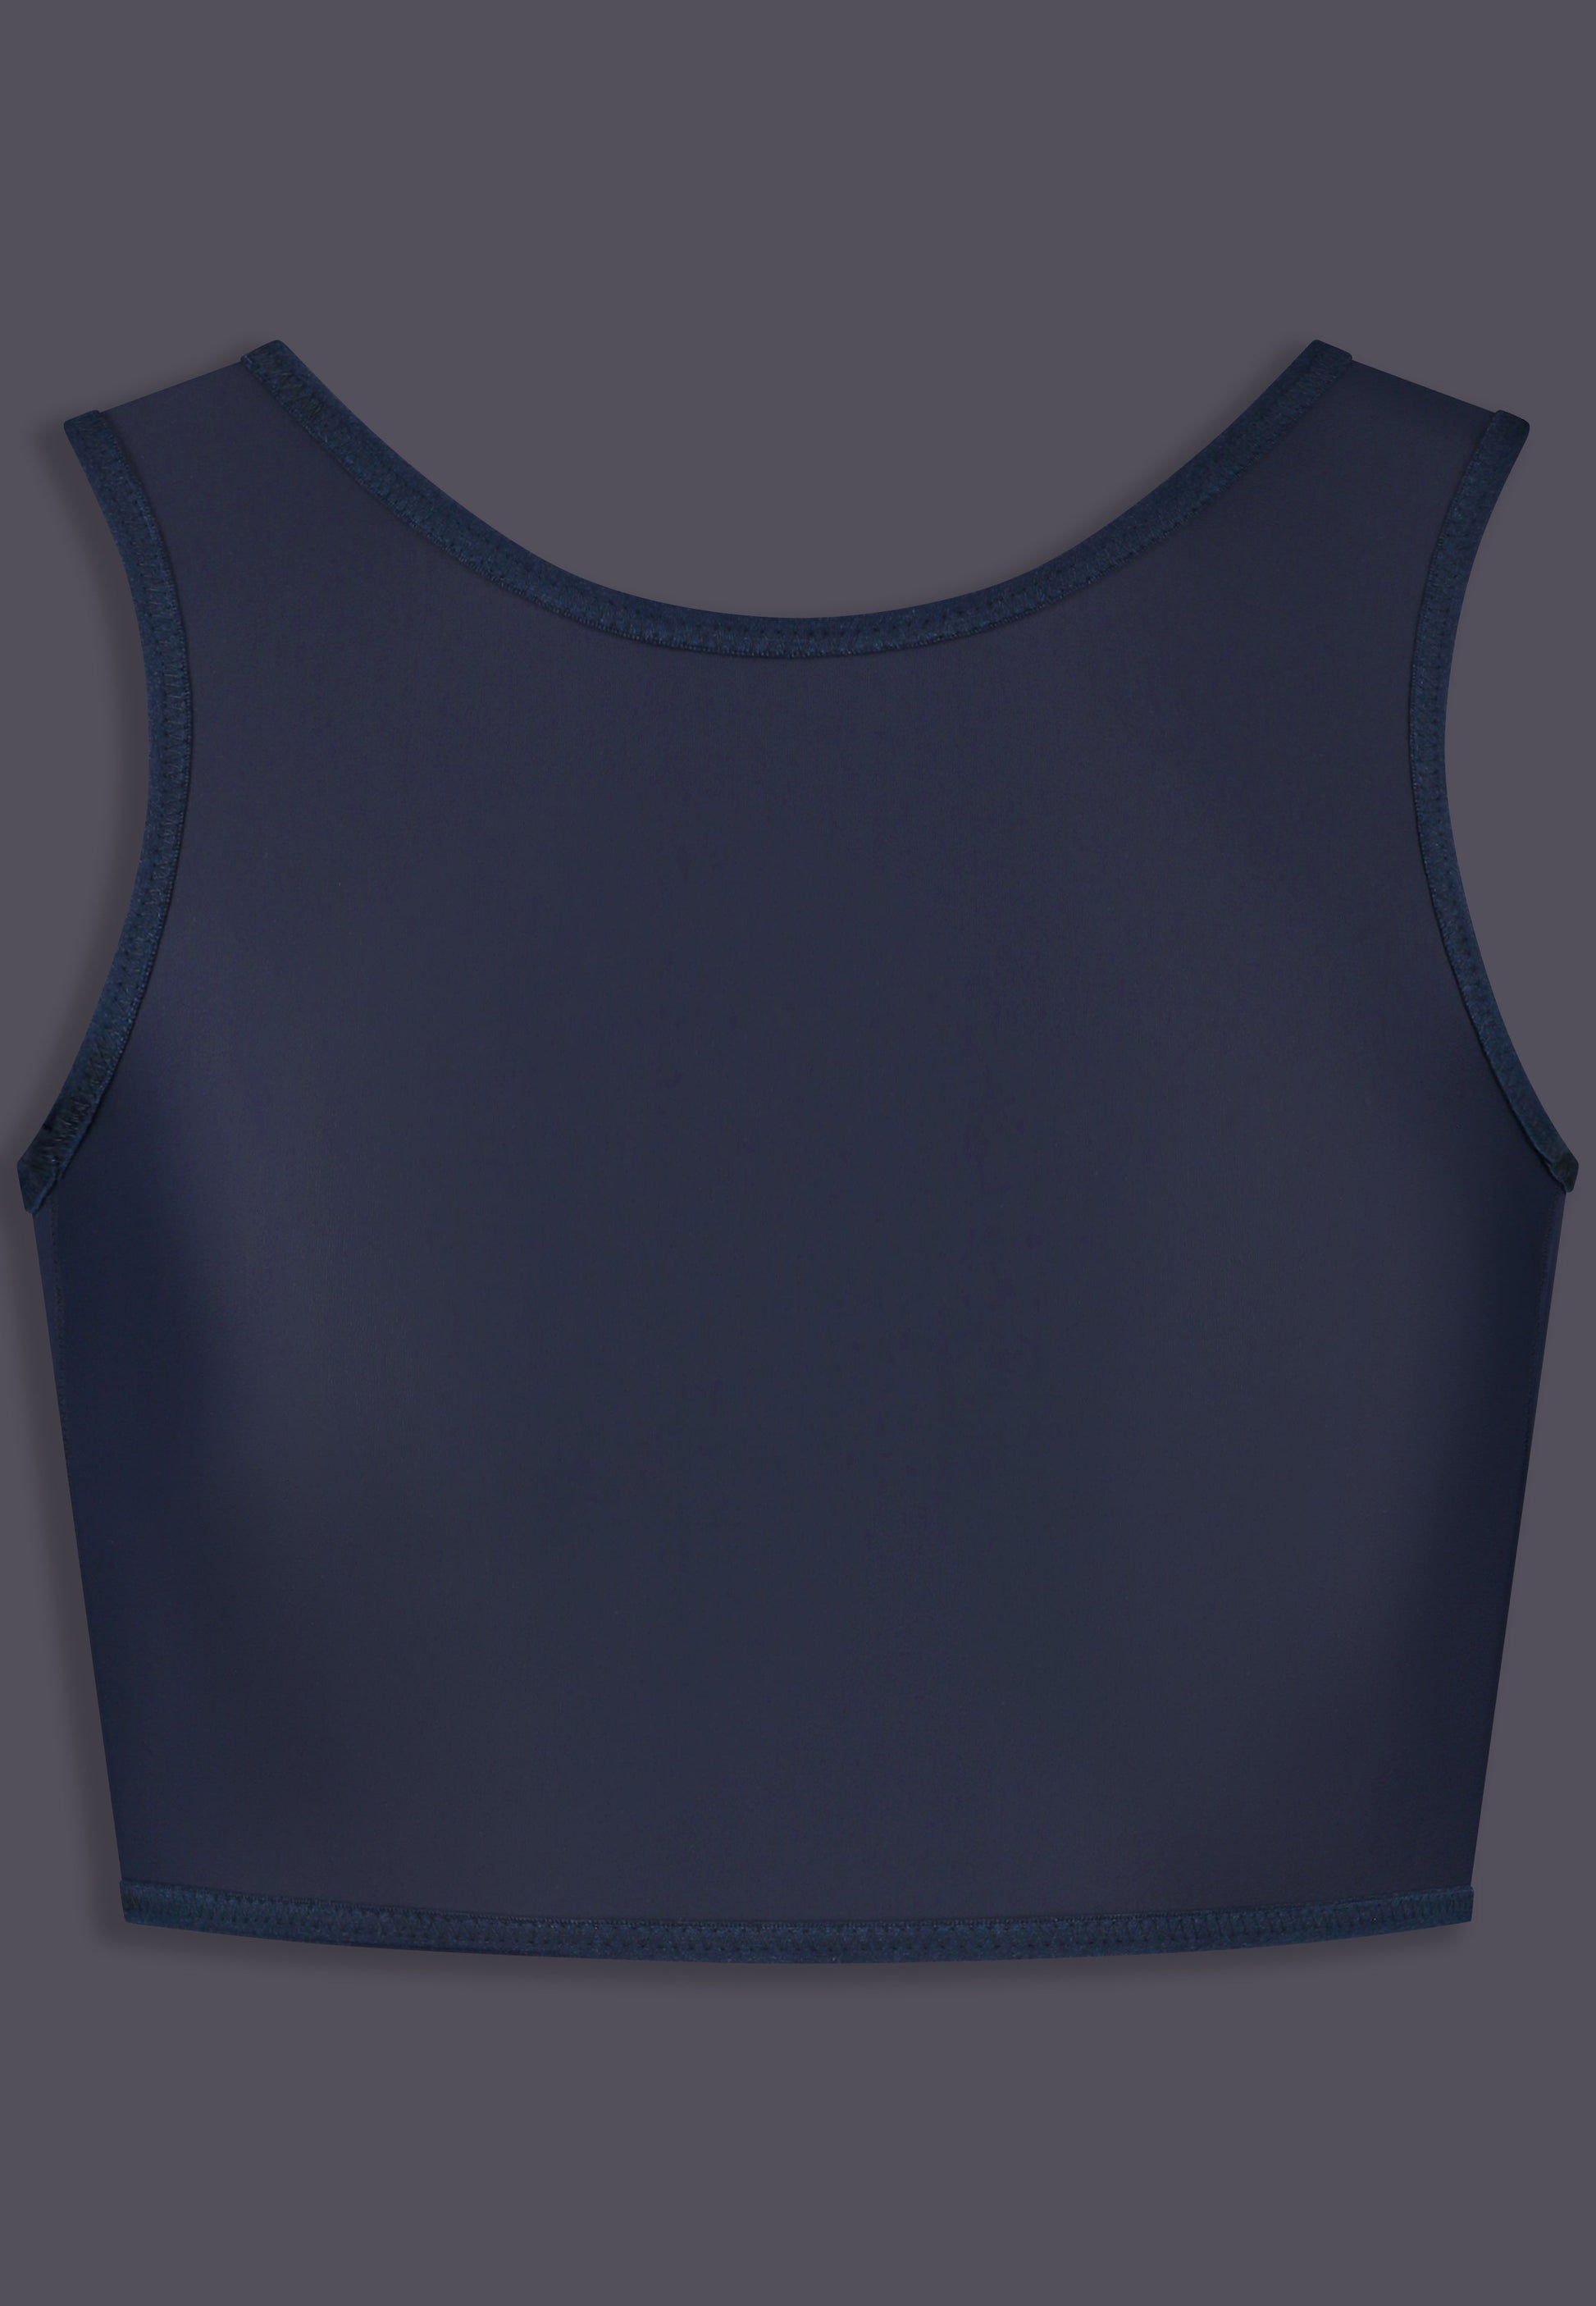 Short binder dark blue front view chest binder dark blue by UNTAG